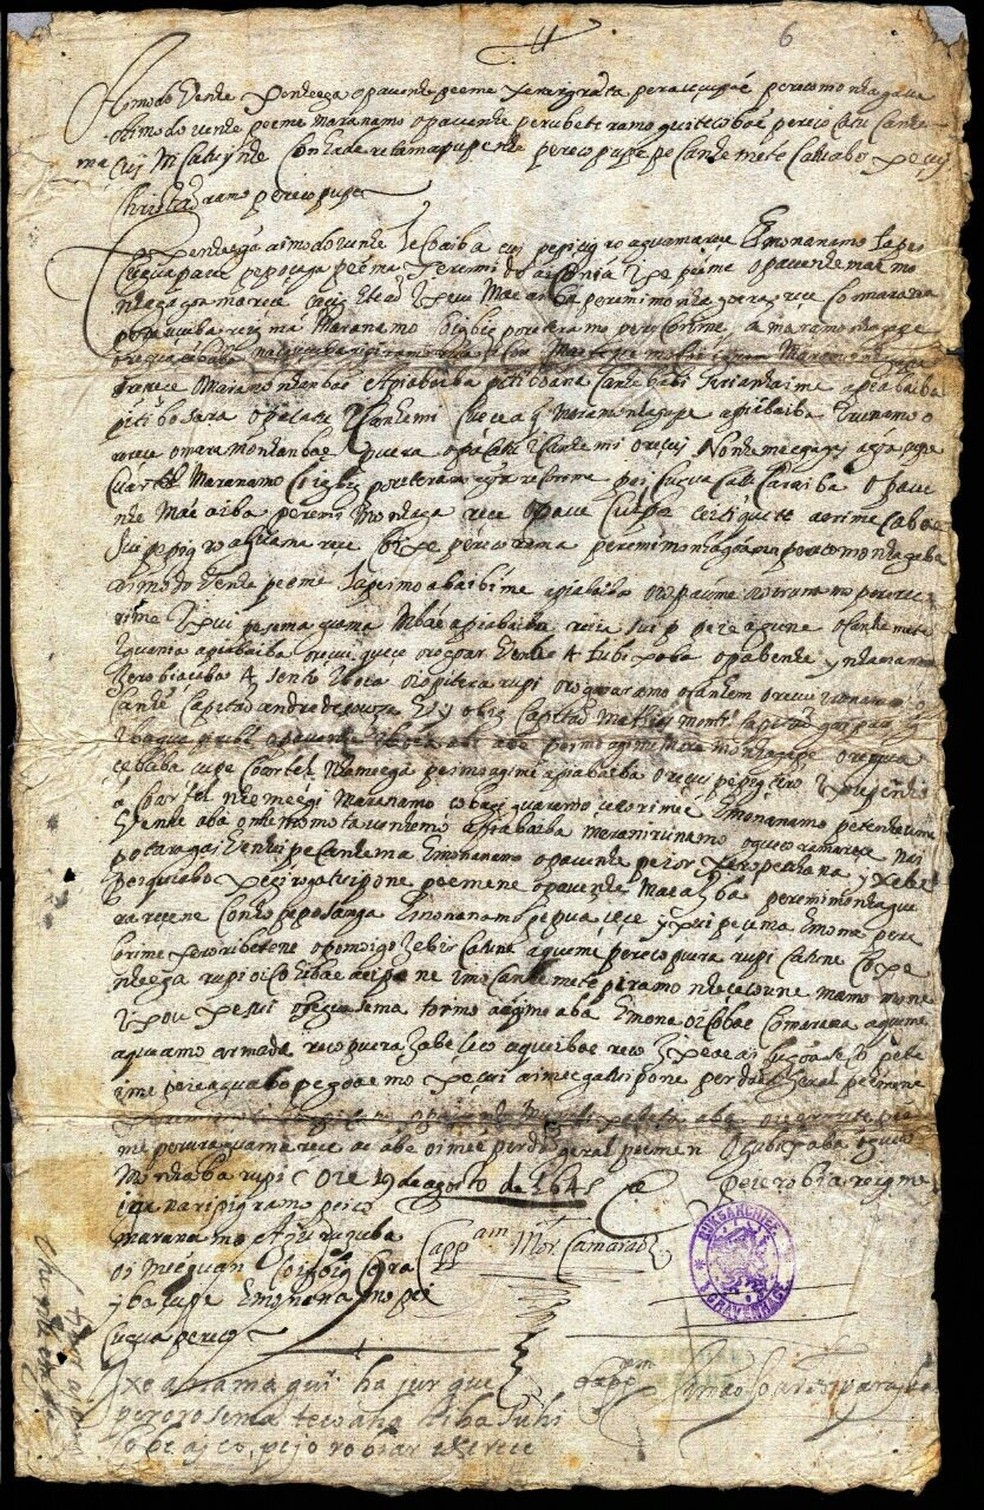 Cartas do século 17 são traduzidas do tupi pela 1ª vez na história: &#39;Por que faço guerra com gente de nosso sangue&#39;, escreveu indígena | São Paulo | G1